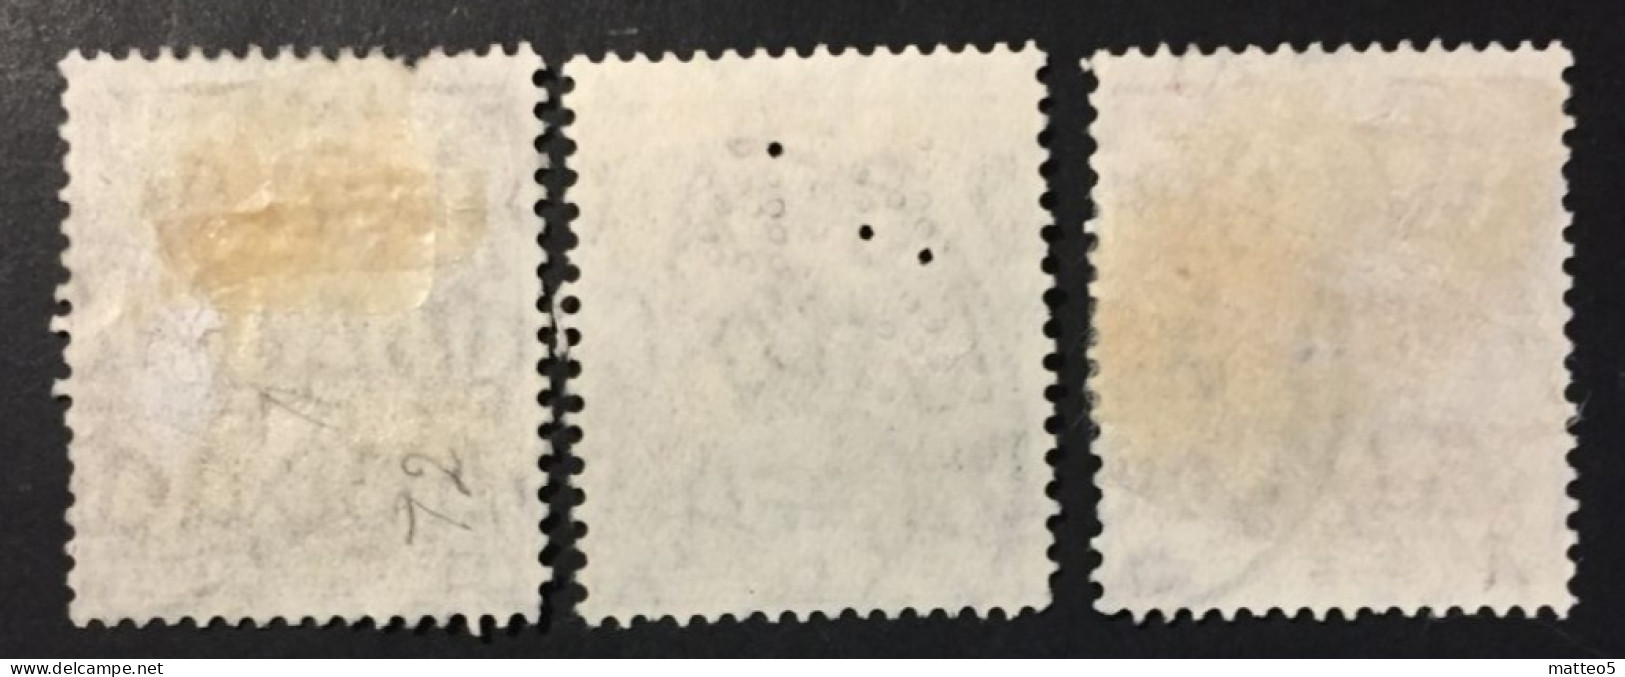 1930 - Australia - King George V - Used - Used Stamps